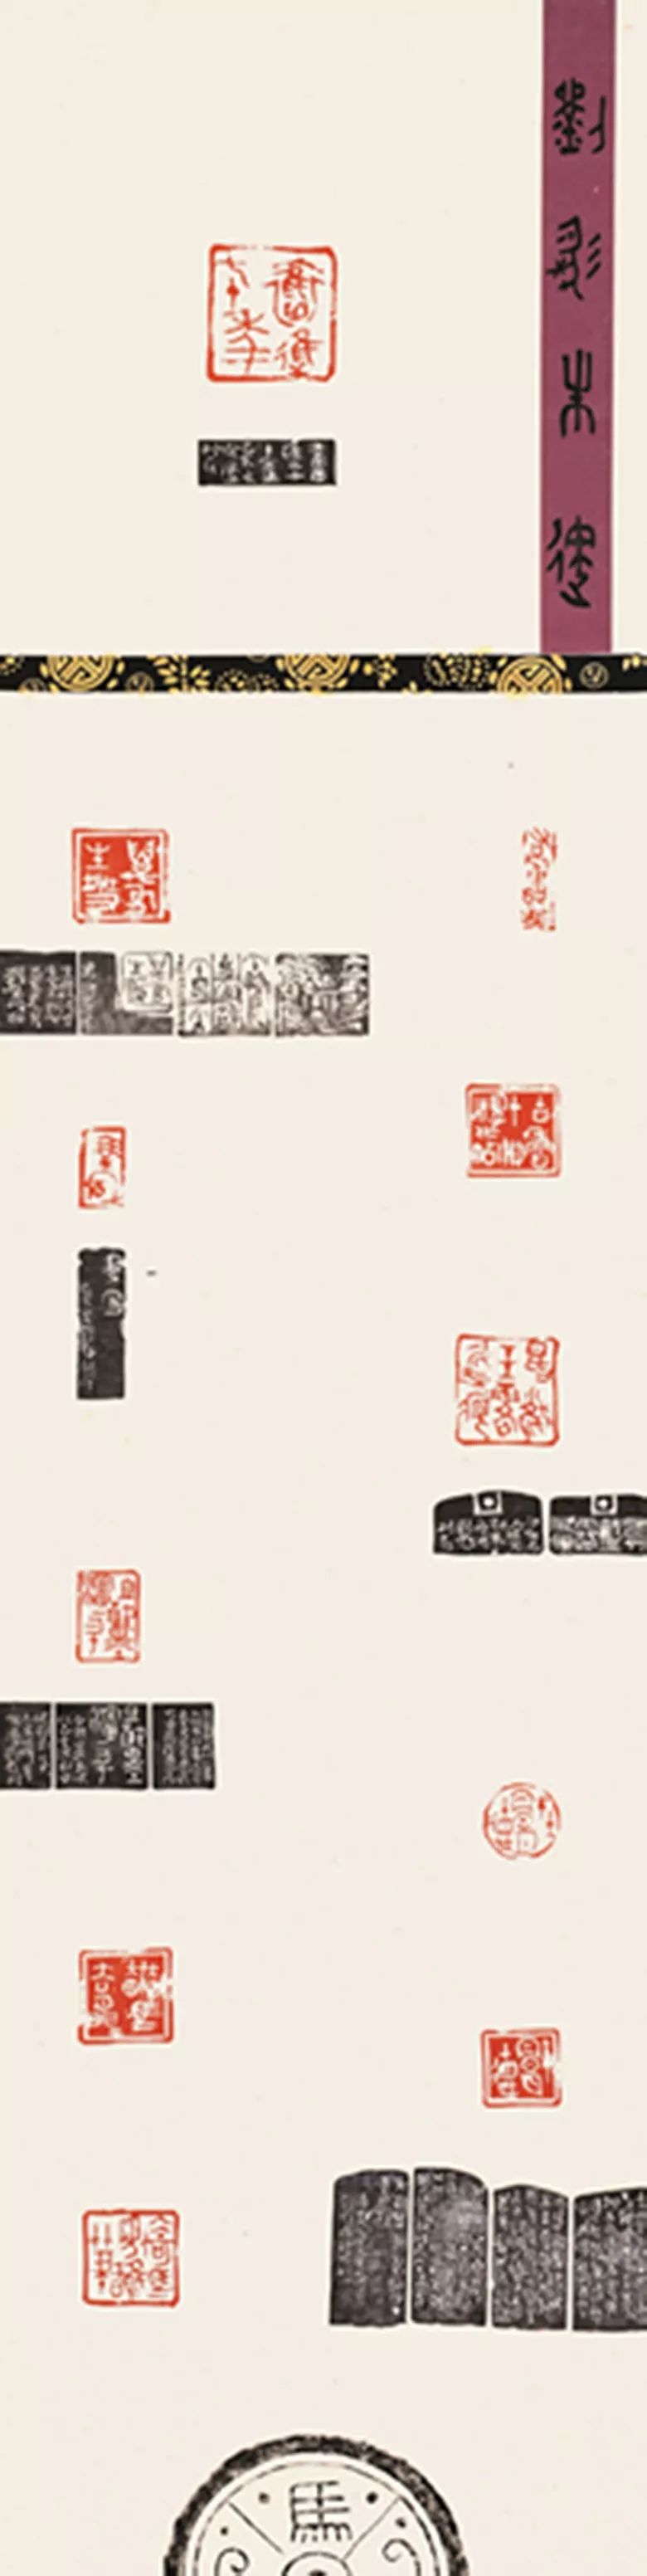 青春心向党 墨舞新时代—安徽省青年书法篆刻作品展在合肥举办(图31)